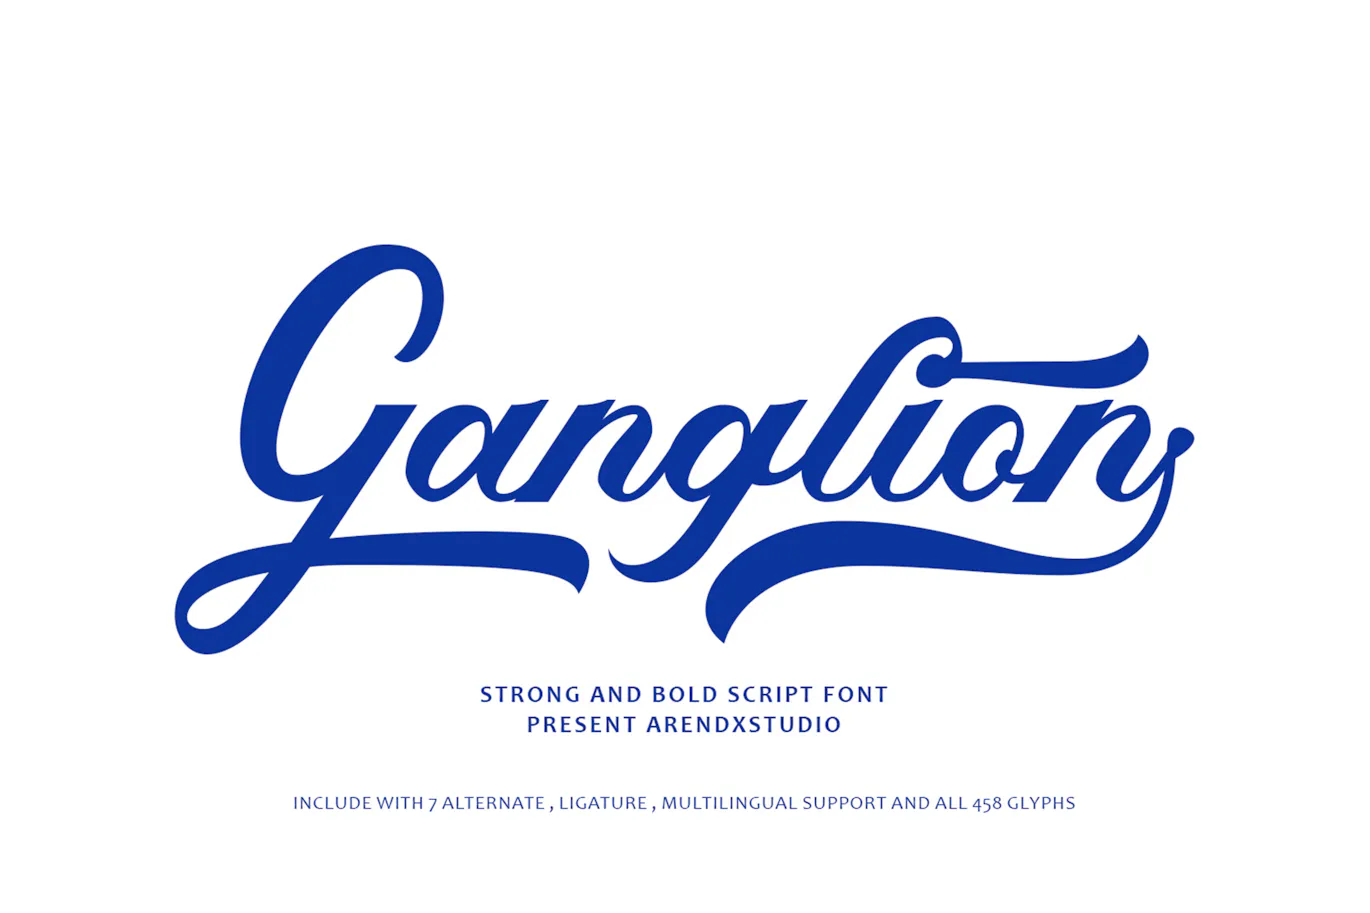 可口可乐标志风格的英文手写花体字体 - Ganglion 设计字体 第1张